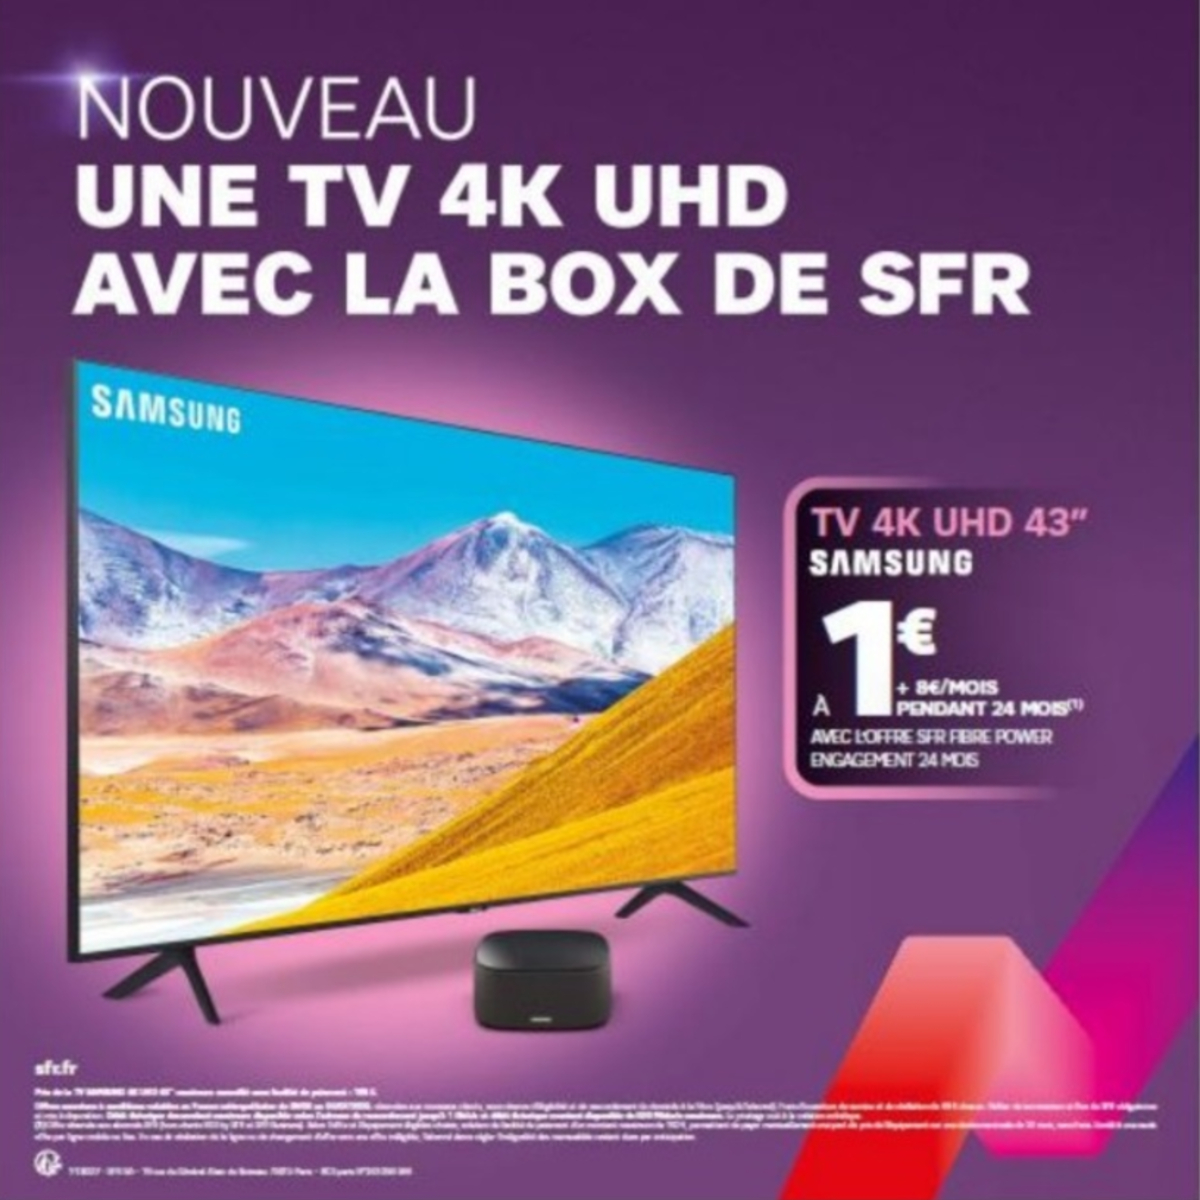 SFR marie une box Internet et un téléviseur Samsung dans une offre promotionnelle d'un nouveau genre